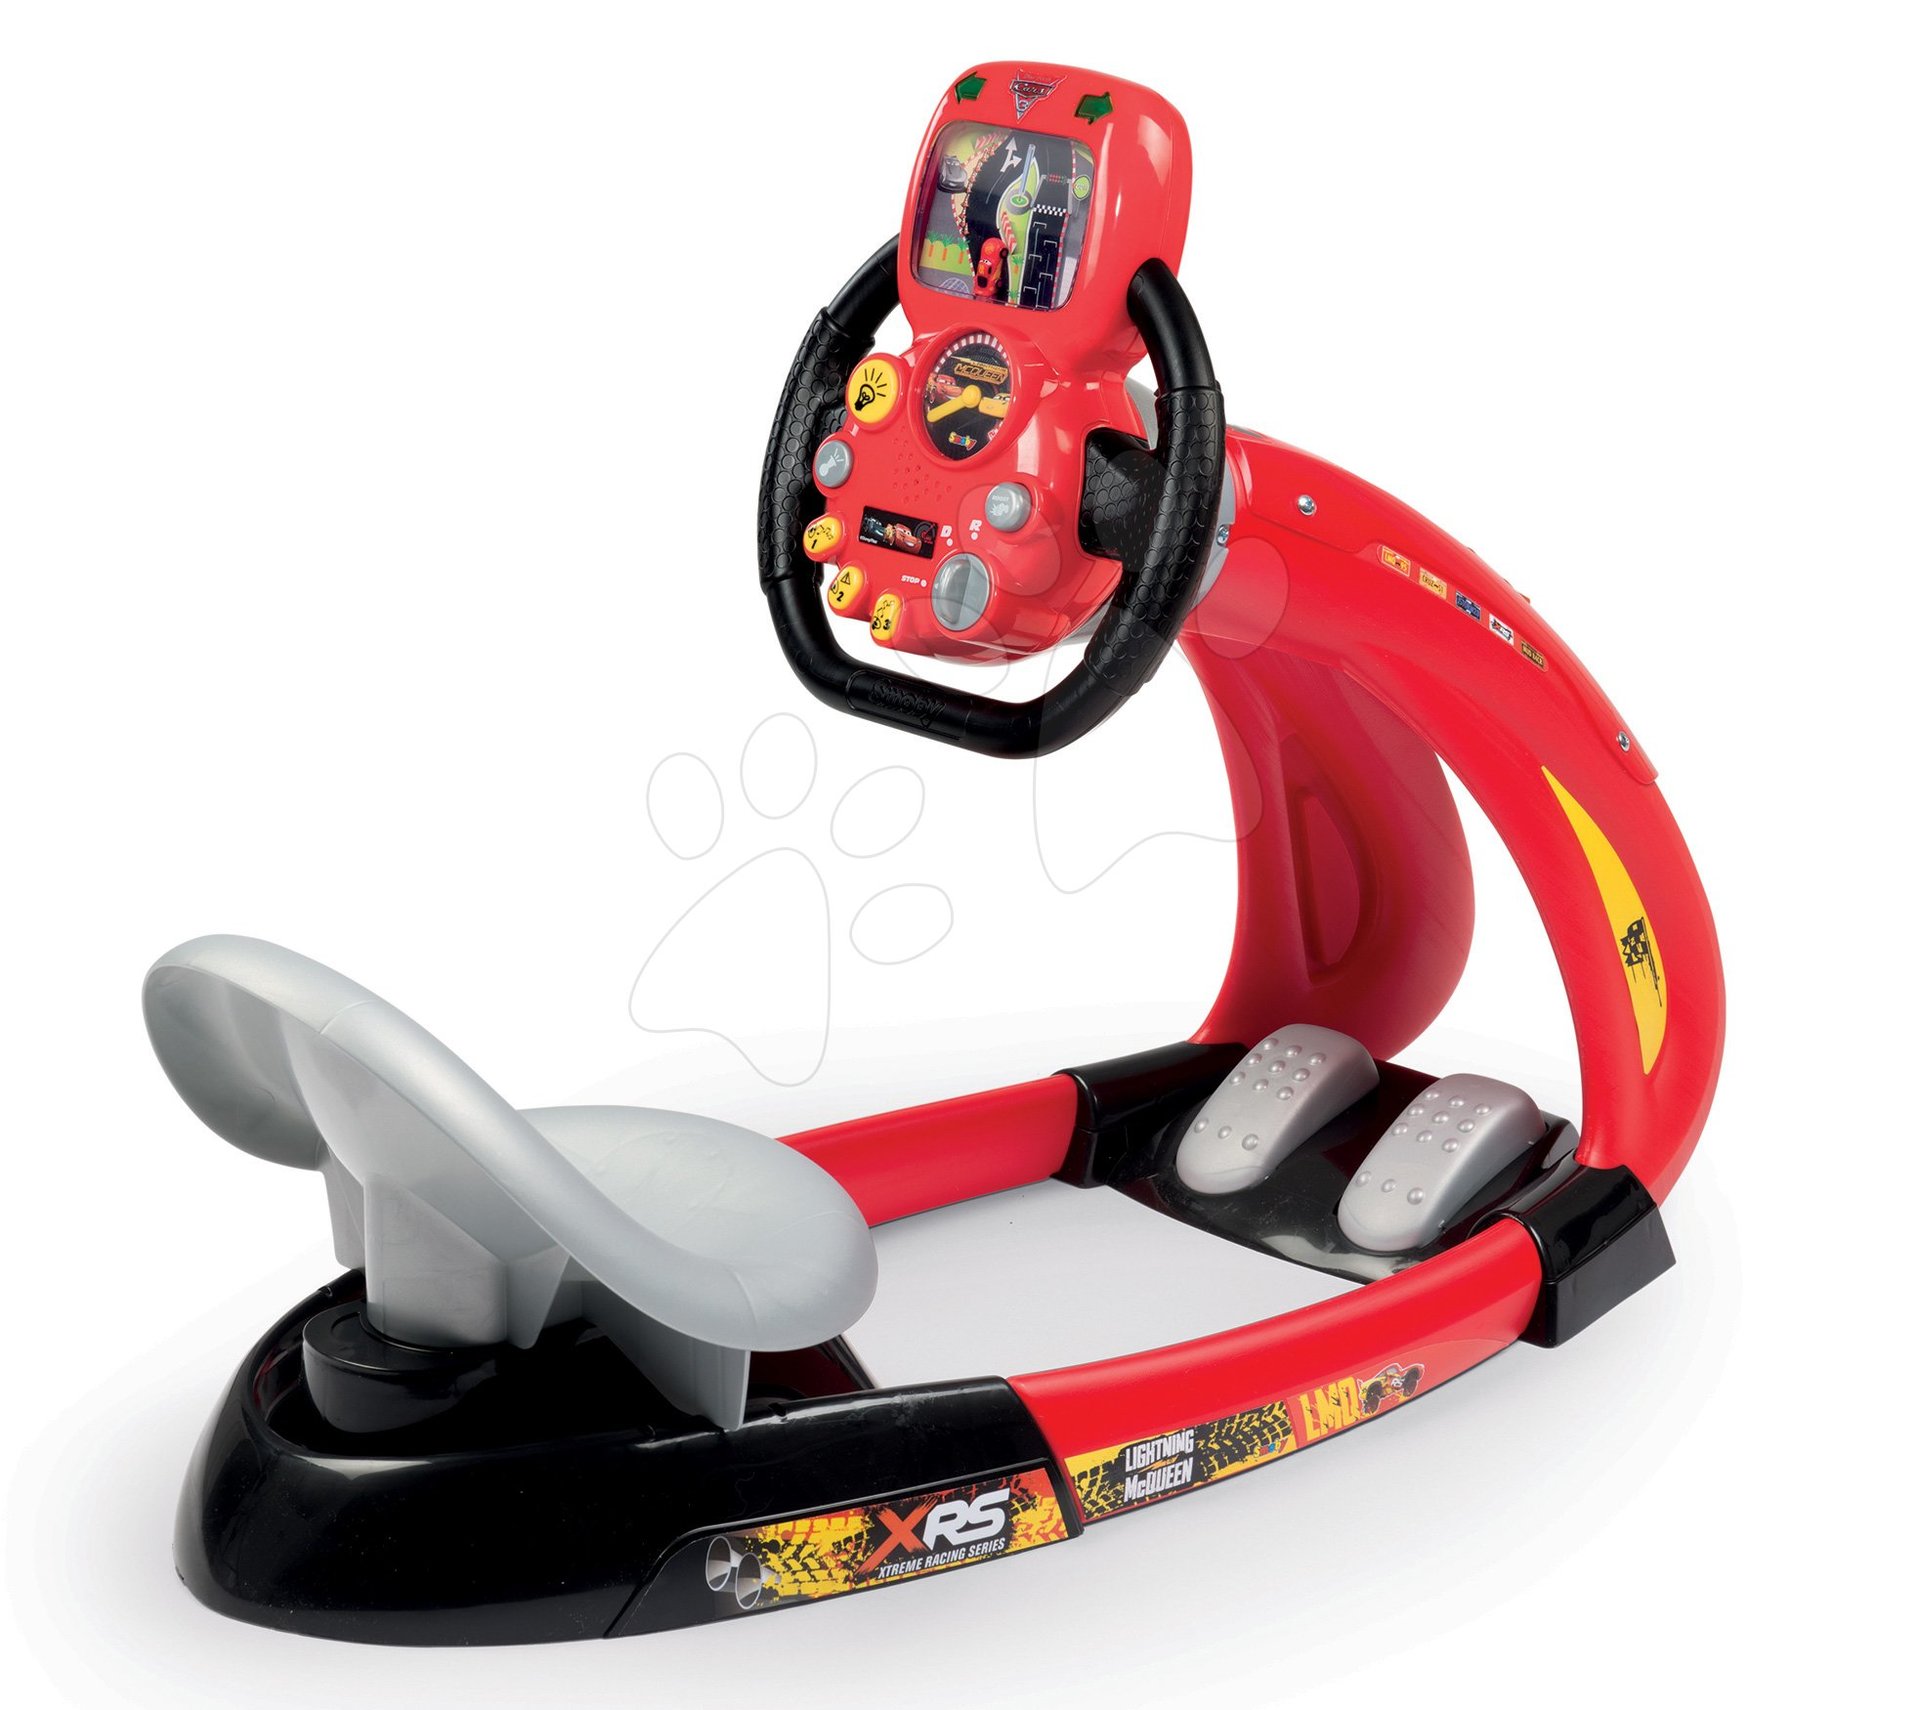 Simulator za djecu - Simulator Flash McQueen Cars XRS Smoby električni sa simulatorom vožnje i držačem pametnog telefona